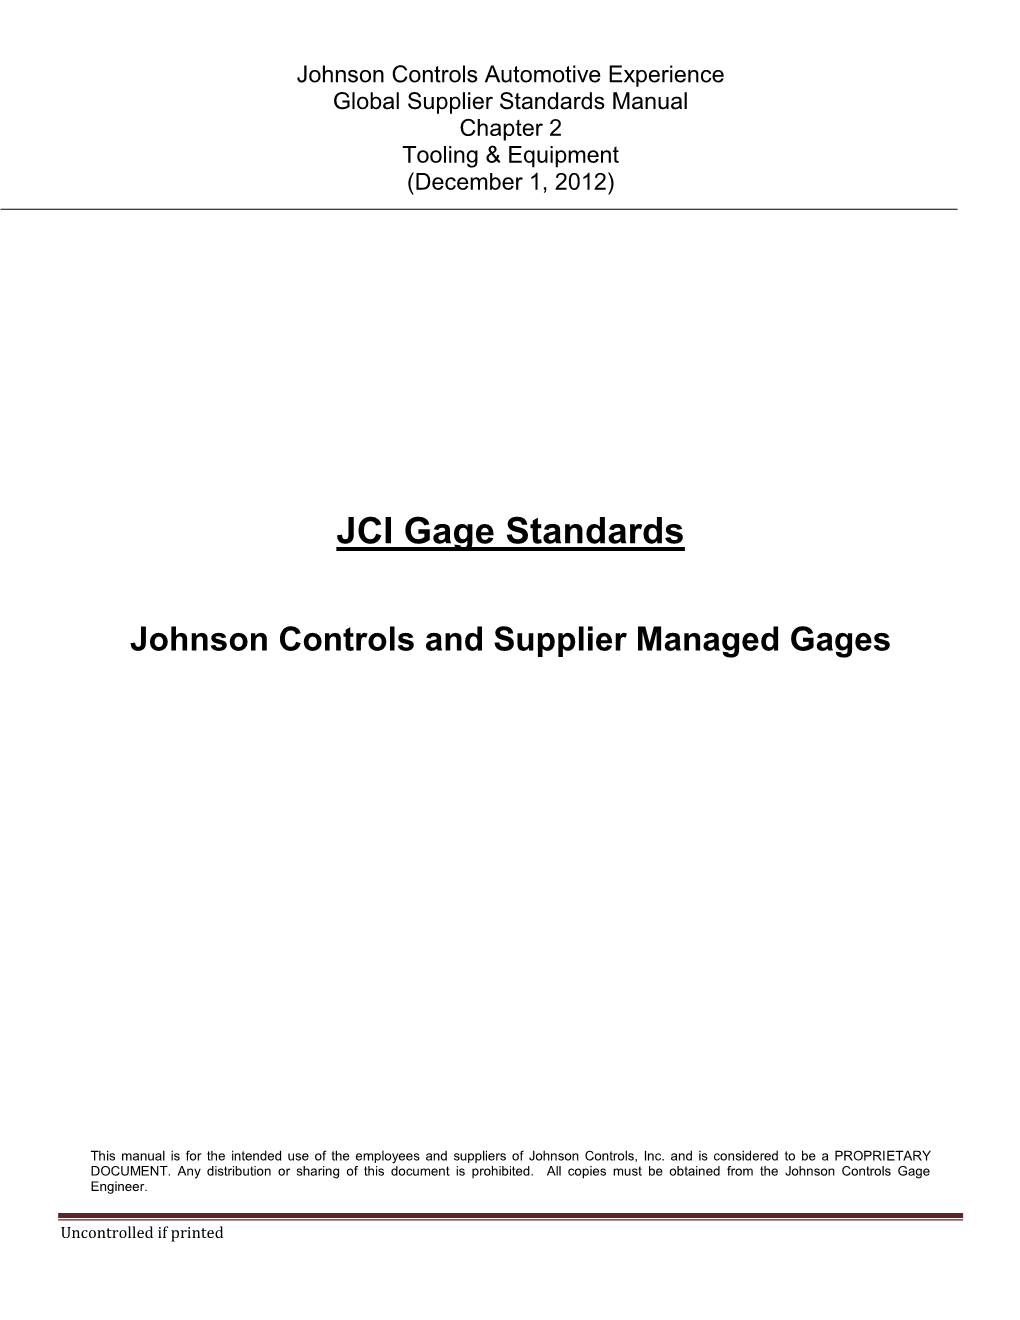 JCI Gage Standards